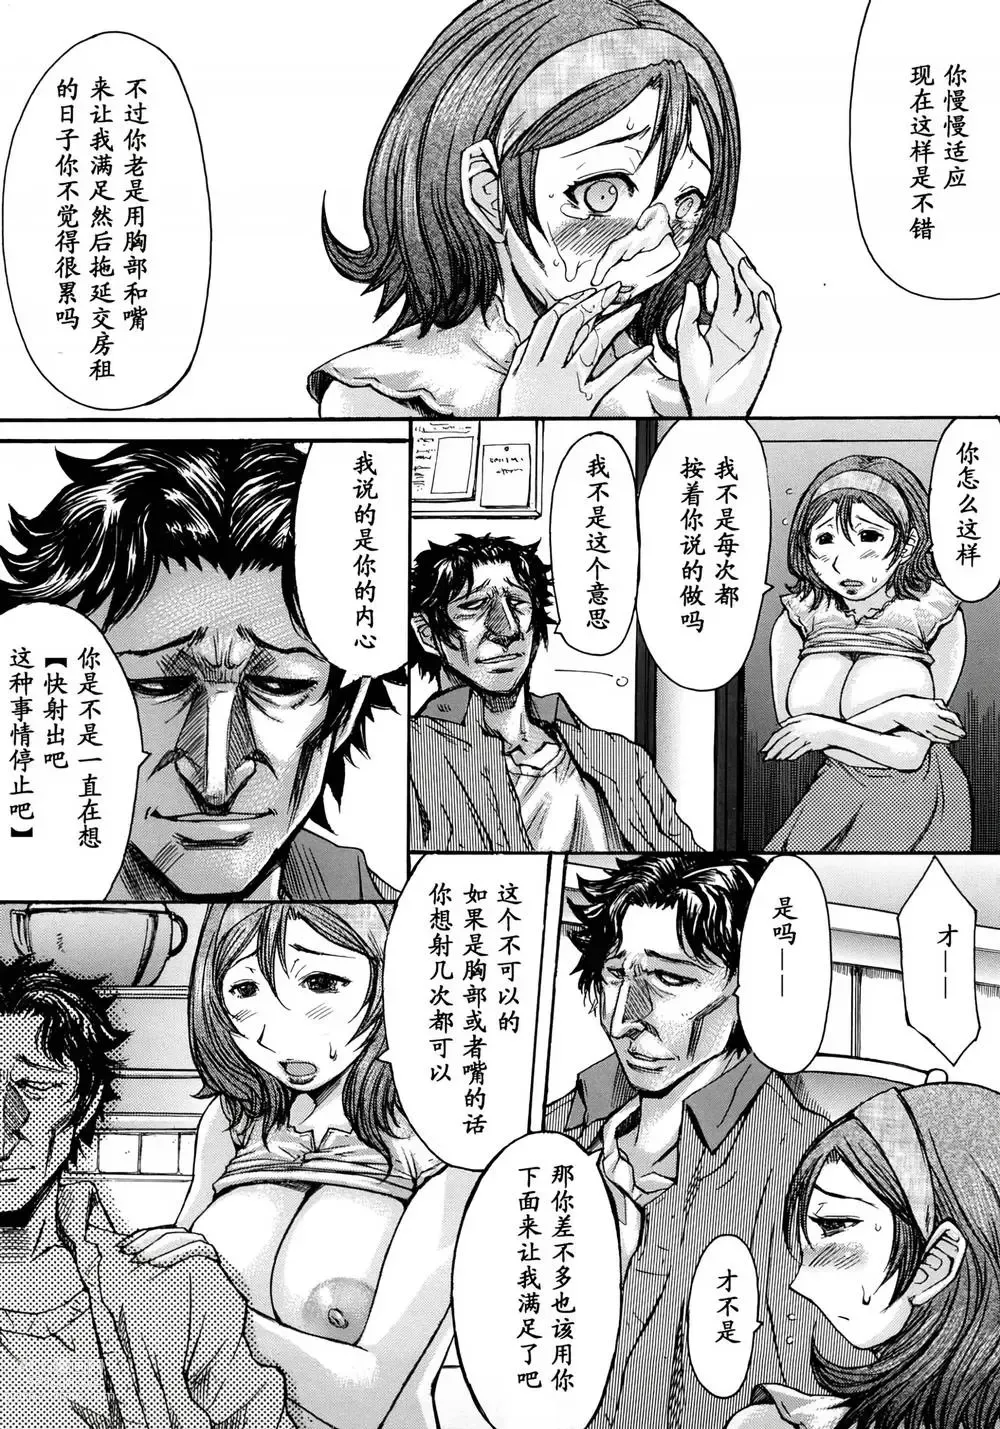 Page 192 of manga Inkyaku